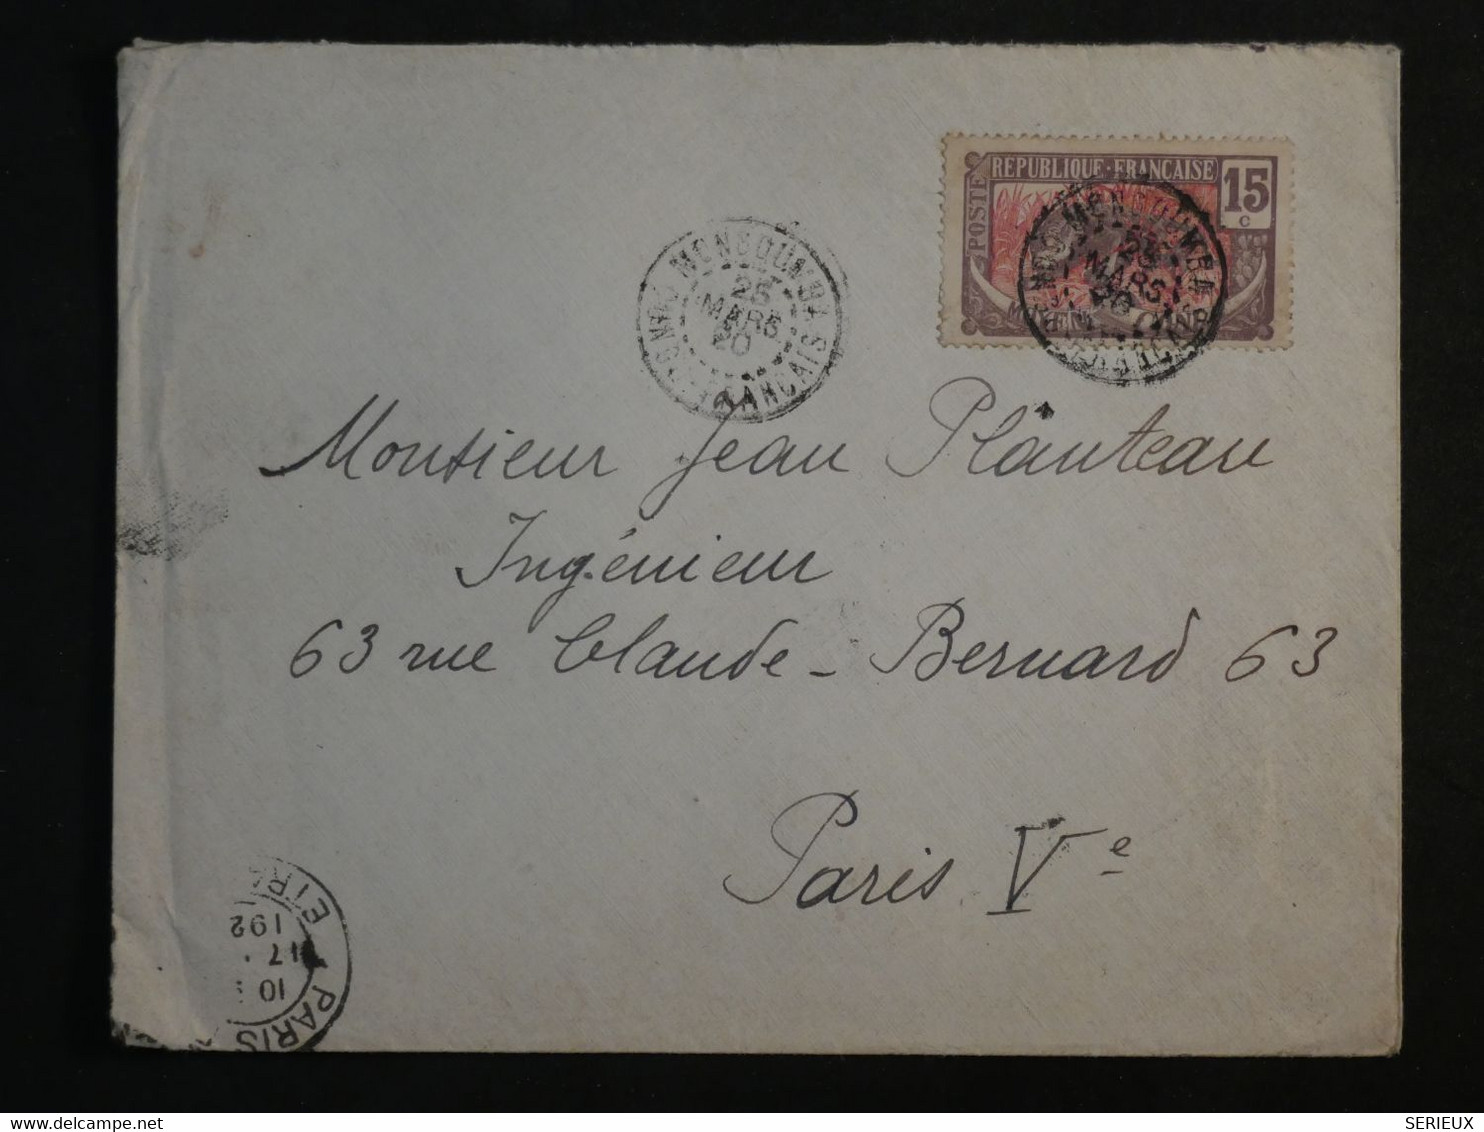 BM11  CAMEROUN CONGO FRANC.  BELLE  LETTRE 1920  PETIT BUREAU  MONGOUMBI ?  A PARIS FRANCE + +AFFRANCH. INTERESSANT++++ - Briefe U. Dokumente